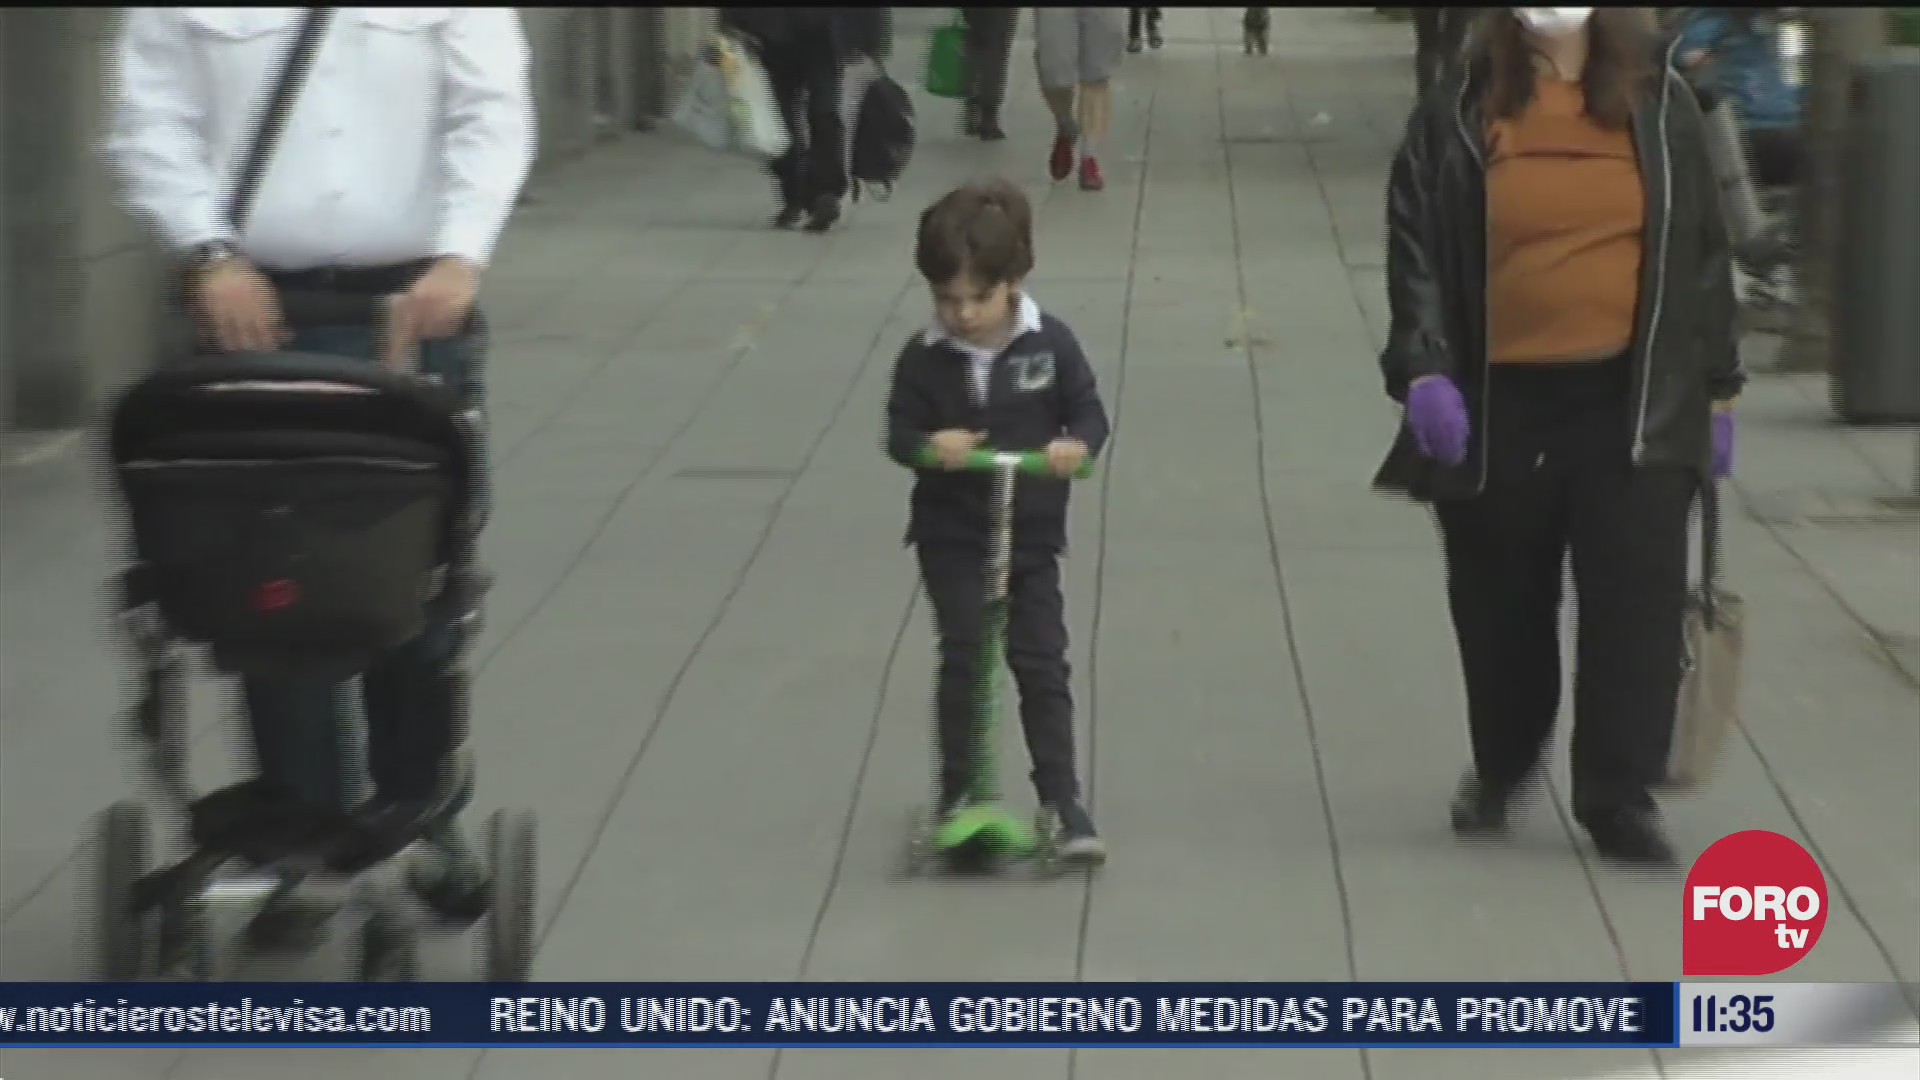 aumenta obesidad infantil durante confinamiento en espana